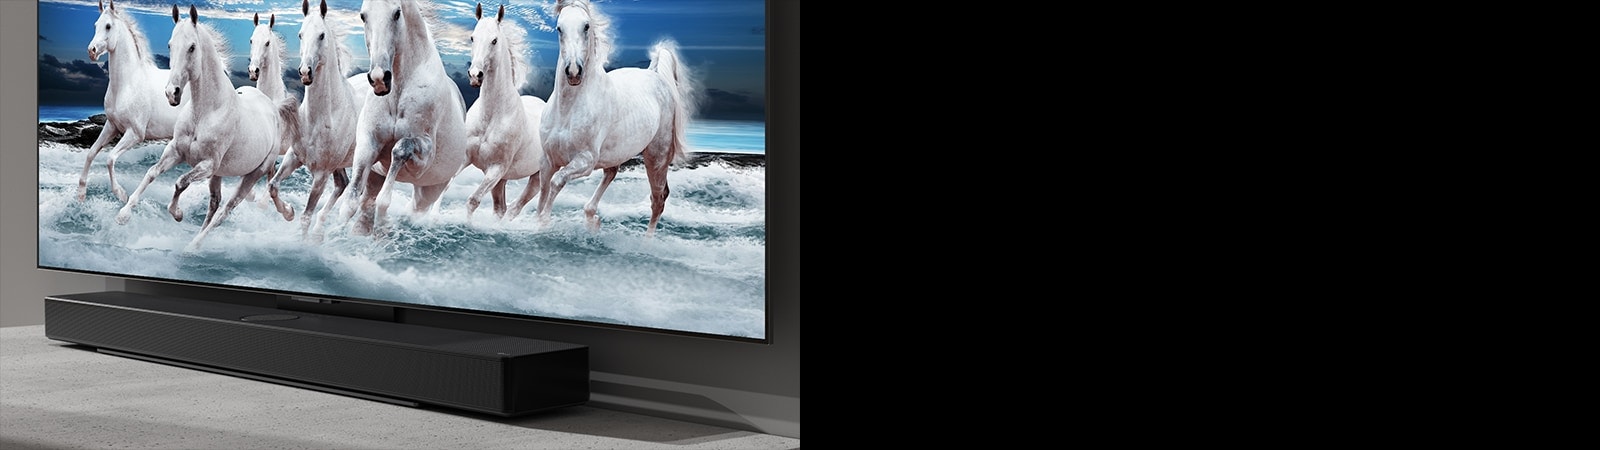 白色桌子上放着无线环绕回音壁和电视，电视屏幕正播放 7 匹白马的画面。